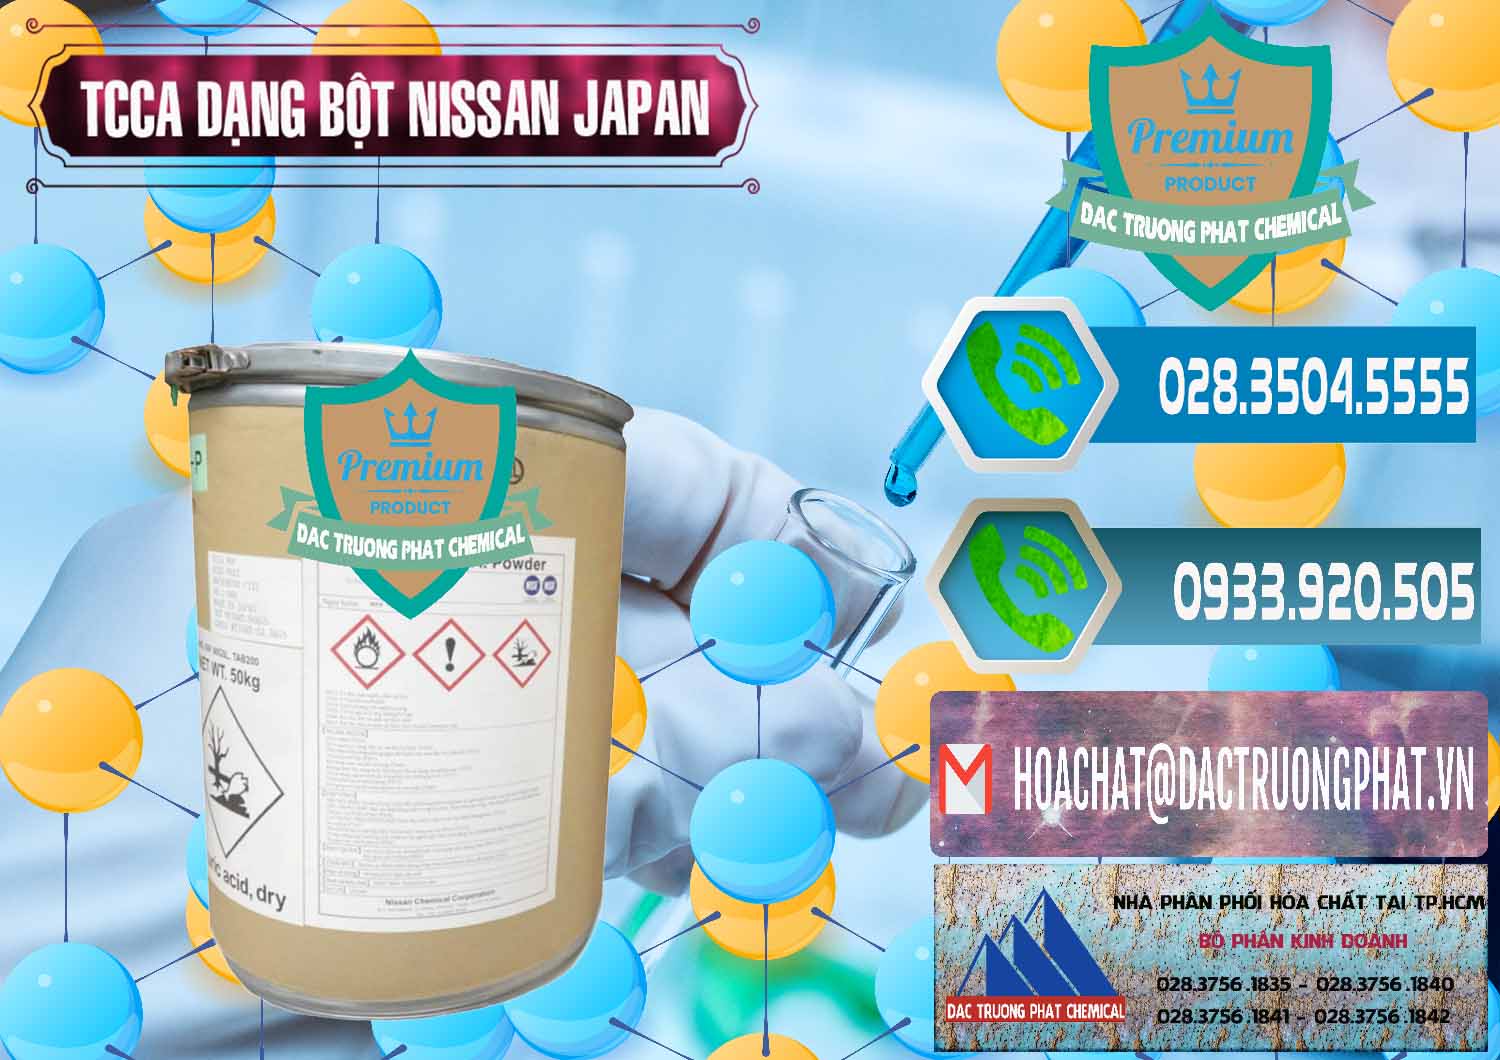 Cty bán - cung ứng TCCA - Acid Trichloroisocyanuric 90% Dạng Bột Nissan Nhật Bản Japan - 0375 - Đơn vị chuyên bán và phân phối hóa chất tại TP.HCM - congtyhoachat.net